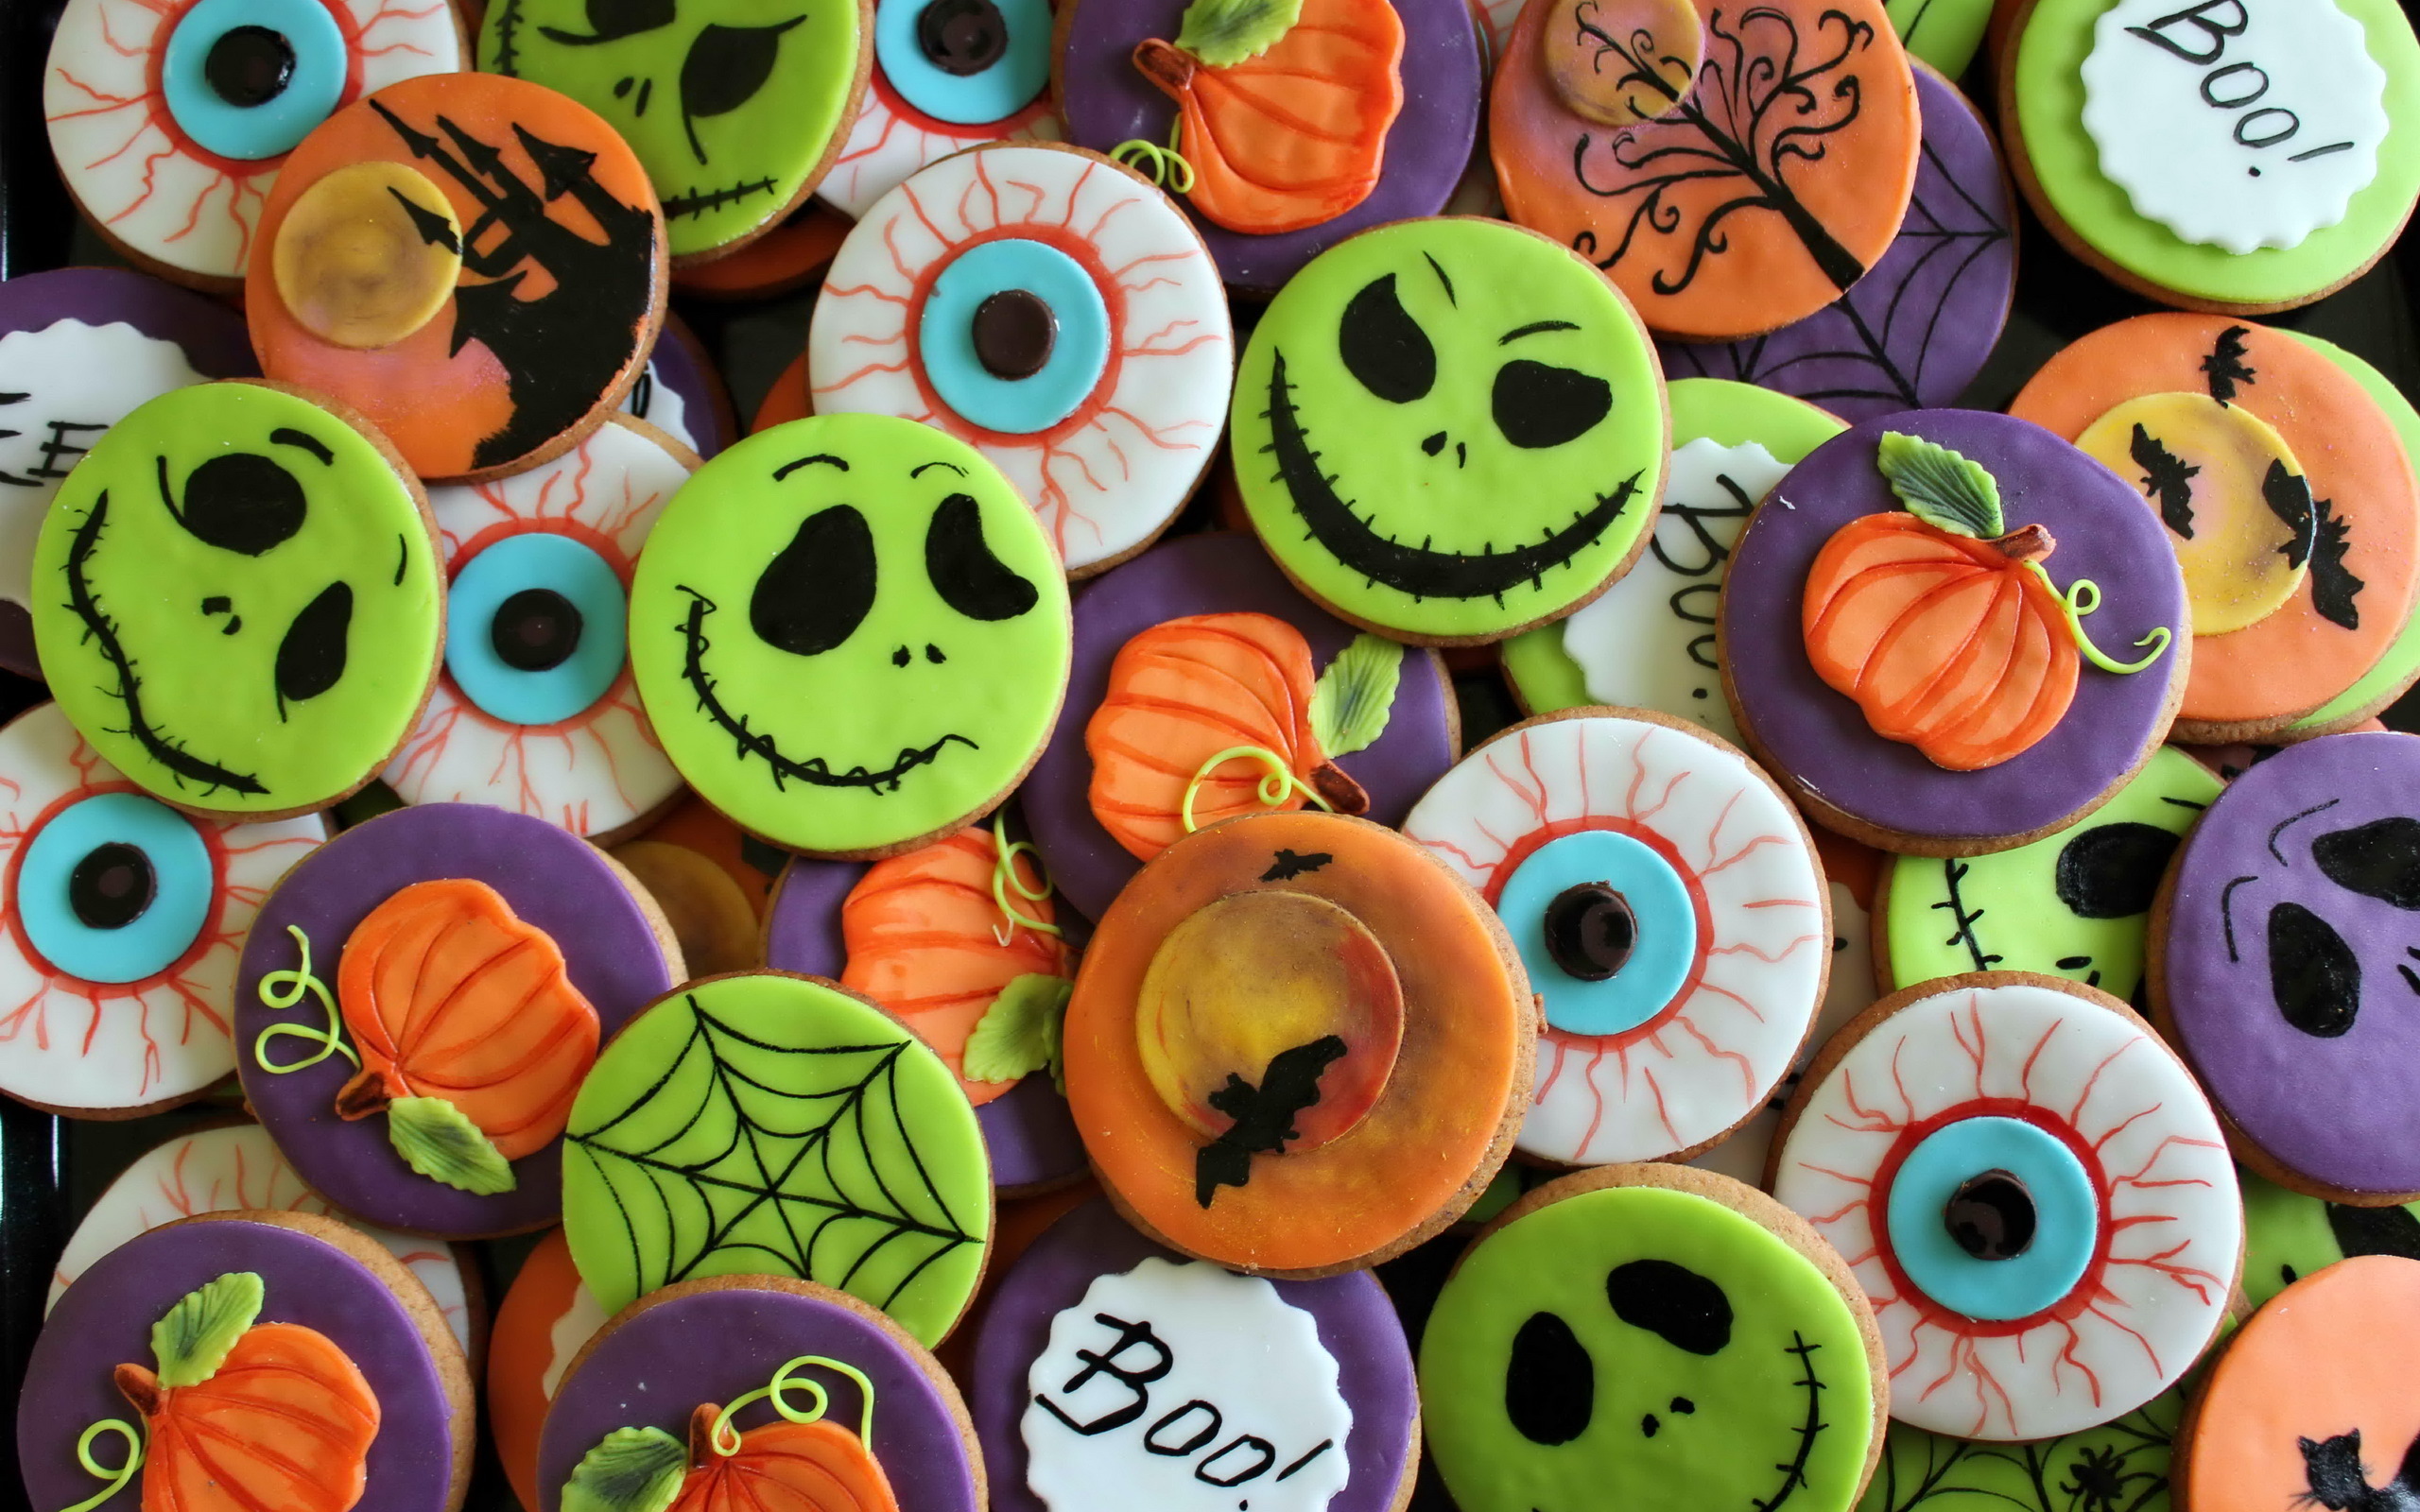 Halloween Cookies Puter Wallpaper Desktop Background